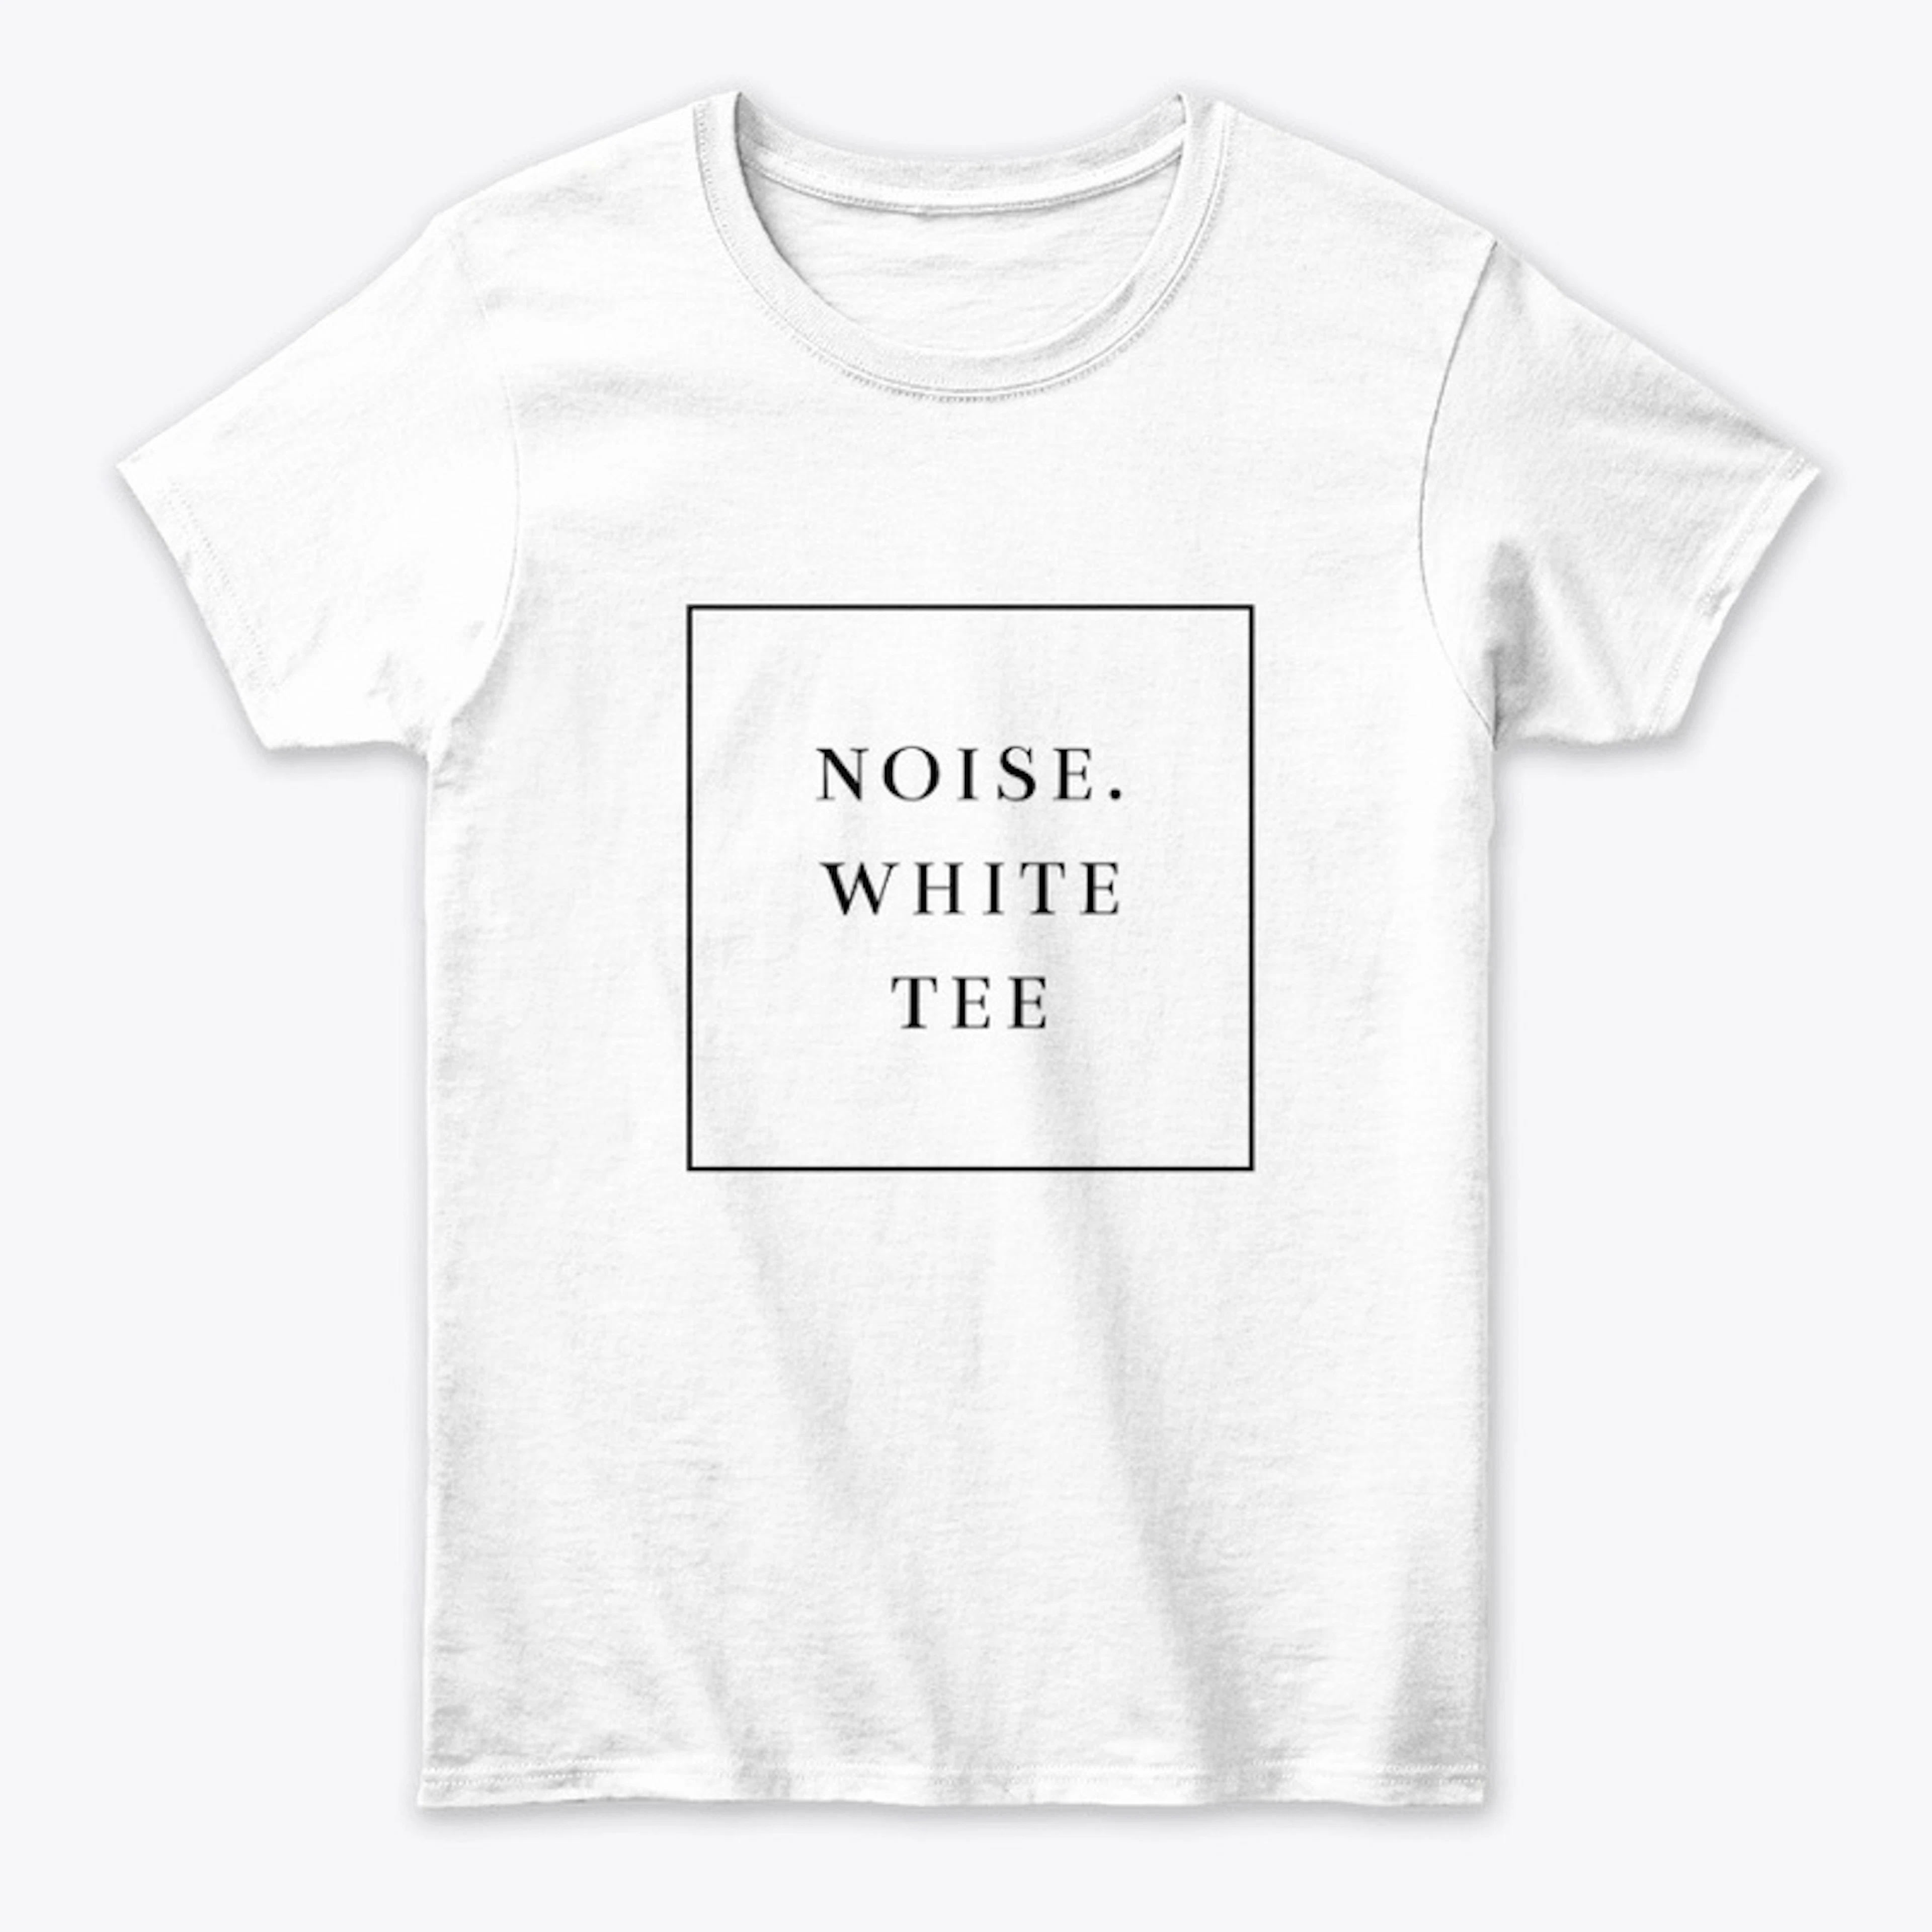 NOiSE.white